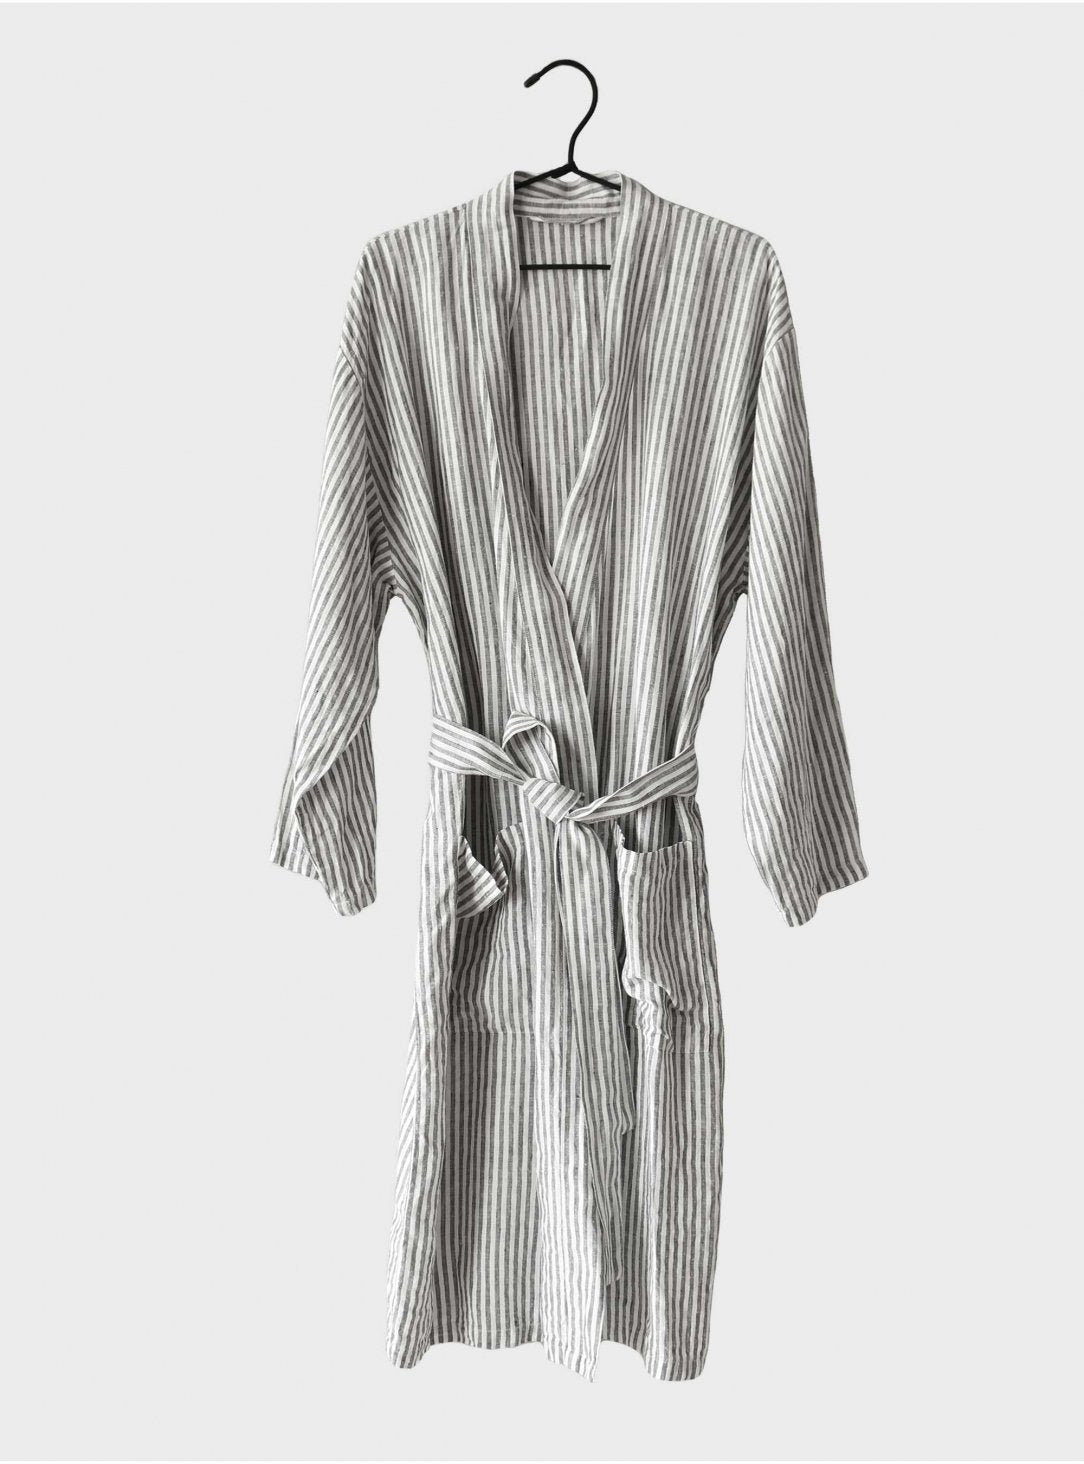 Linen bathrobe Stripes L/XL